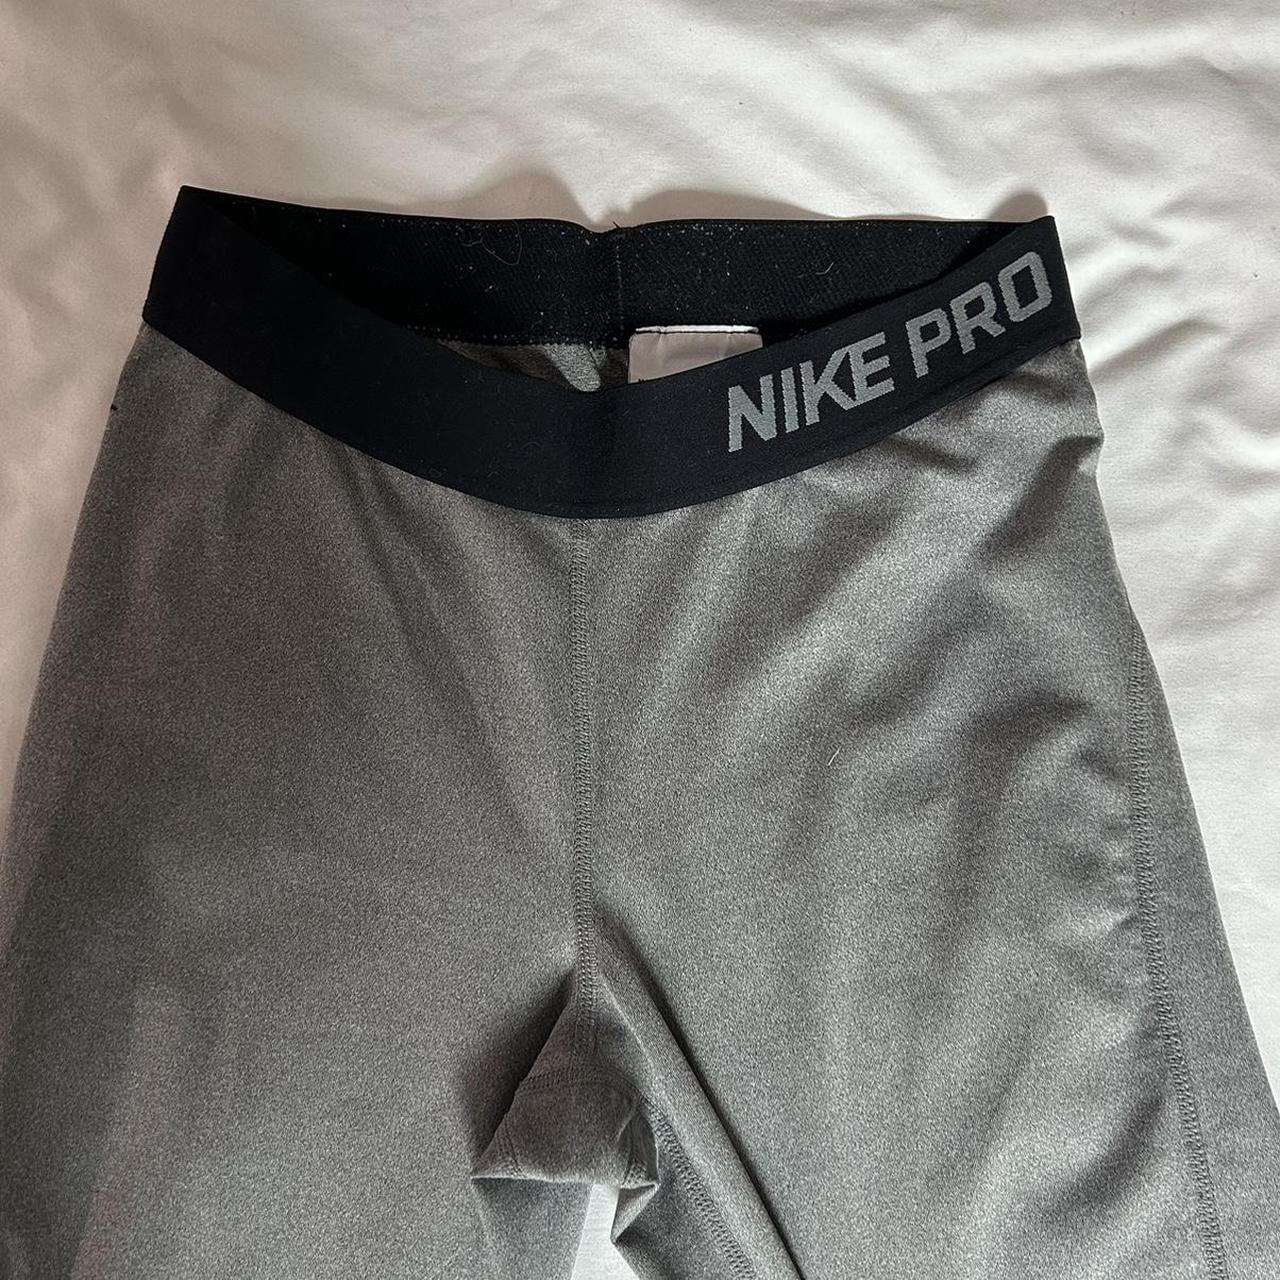 Nike Pro leggings. #nike #nikepro #nikeleggings - Depop